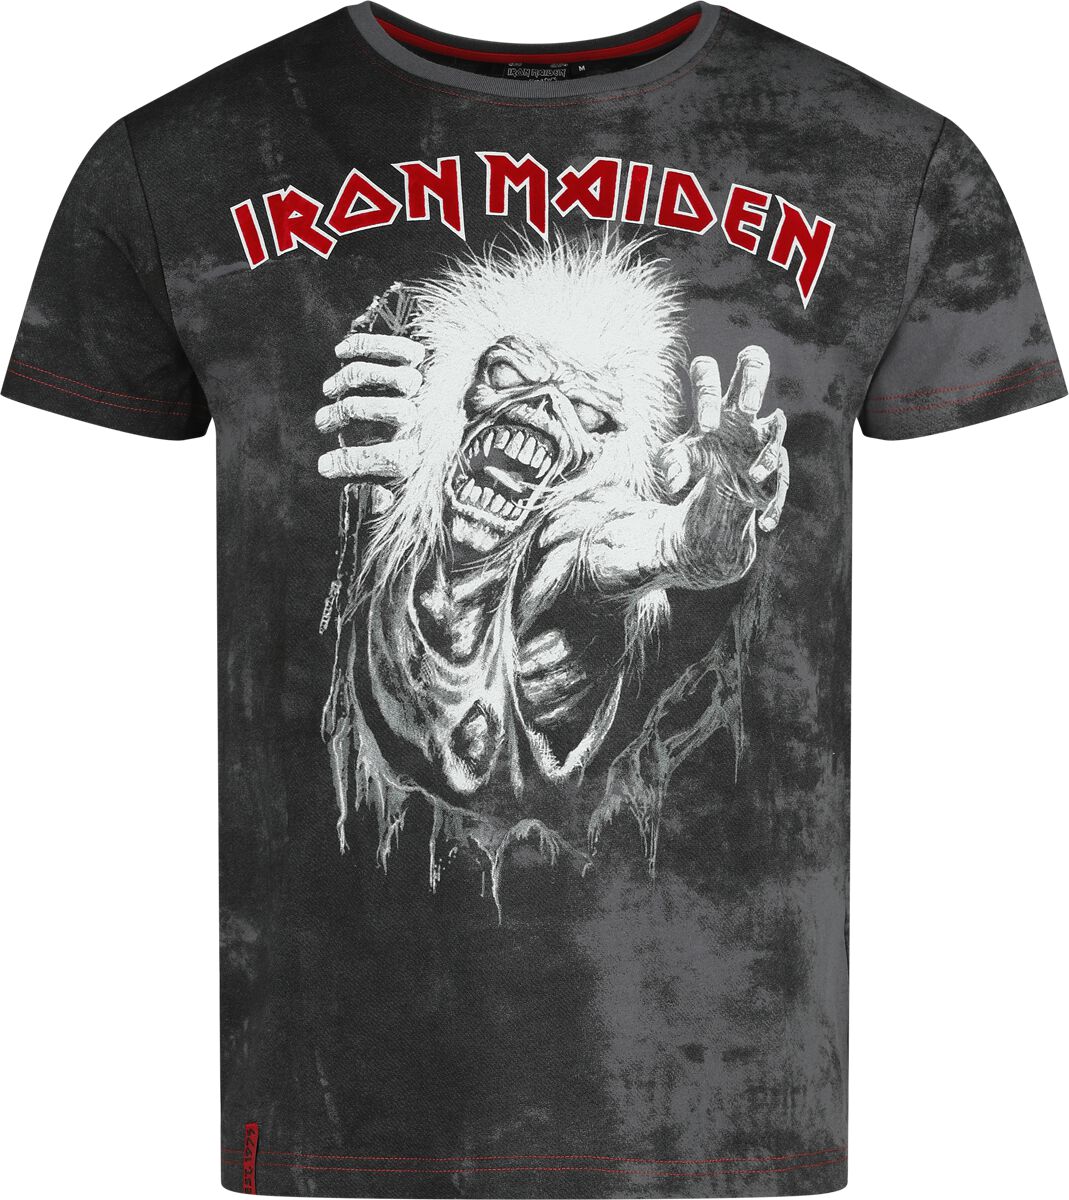 Iron Maiden T-Shirt - EMP Signature Collection - S bis 3XL - für Männer - Größe M - grau/schwarz  - EMP exklusives Merchandise!